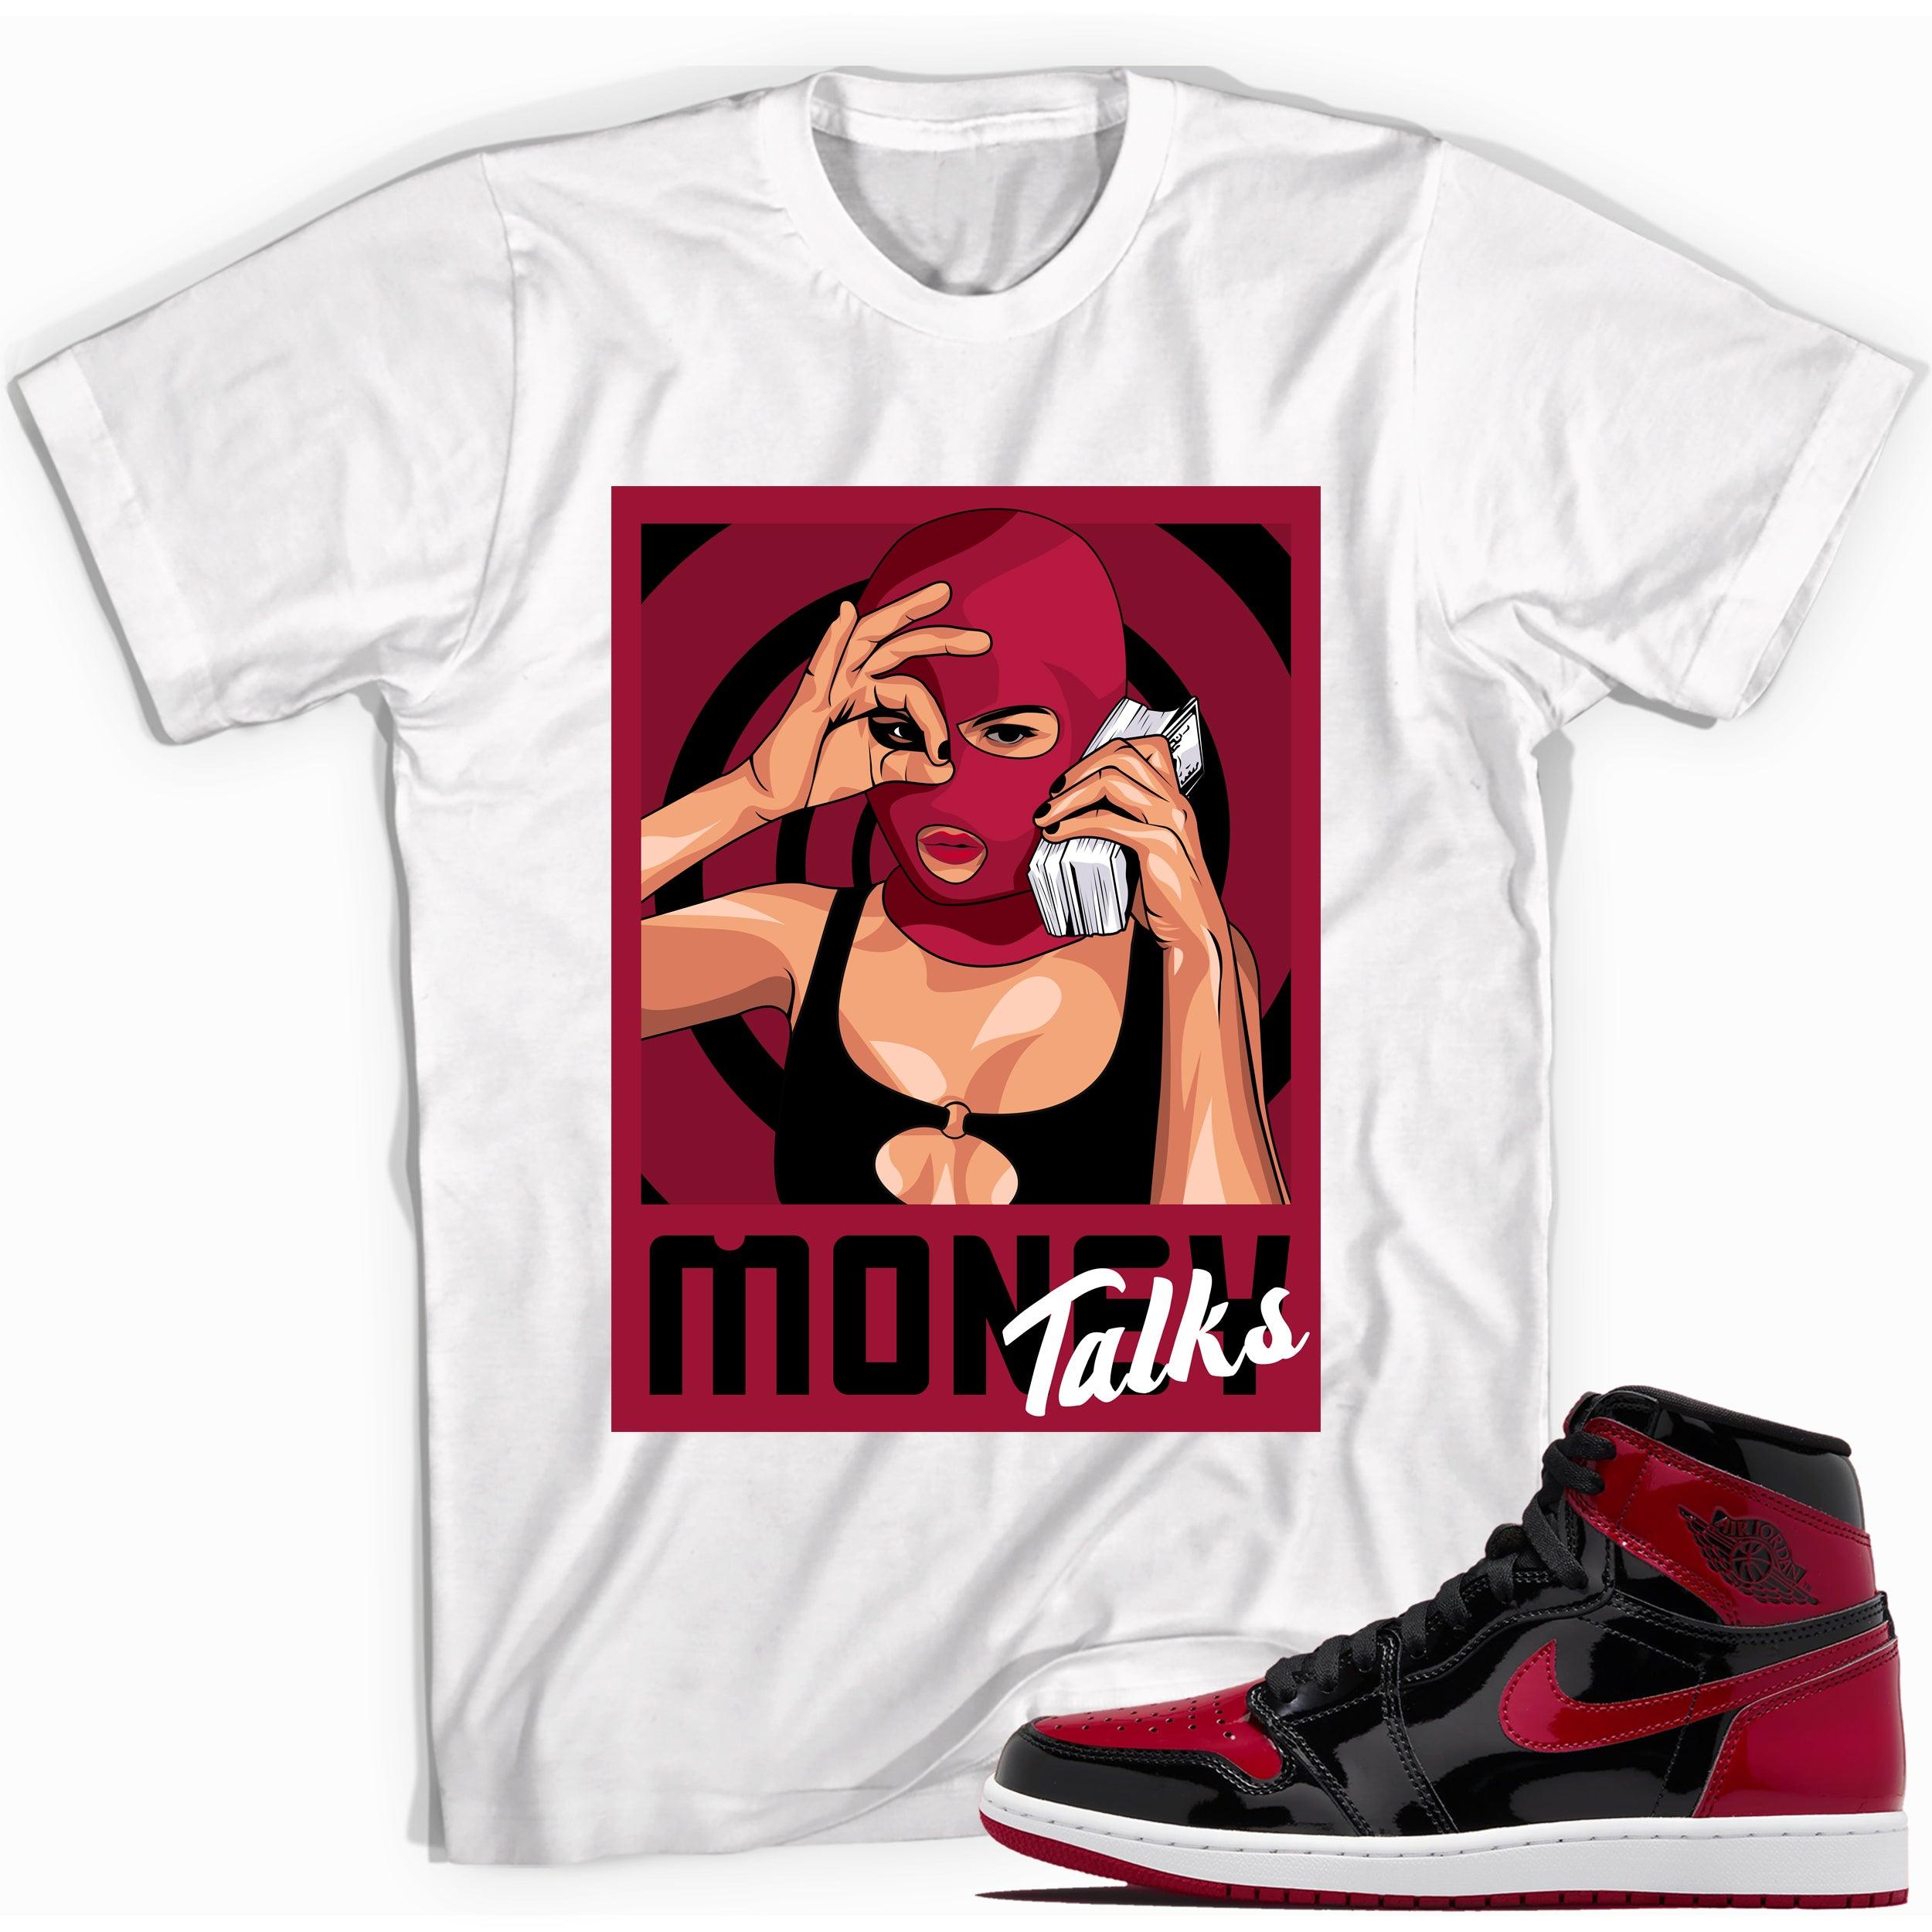 Money Talks Sneaker T-shirt for Jordan 1s photo